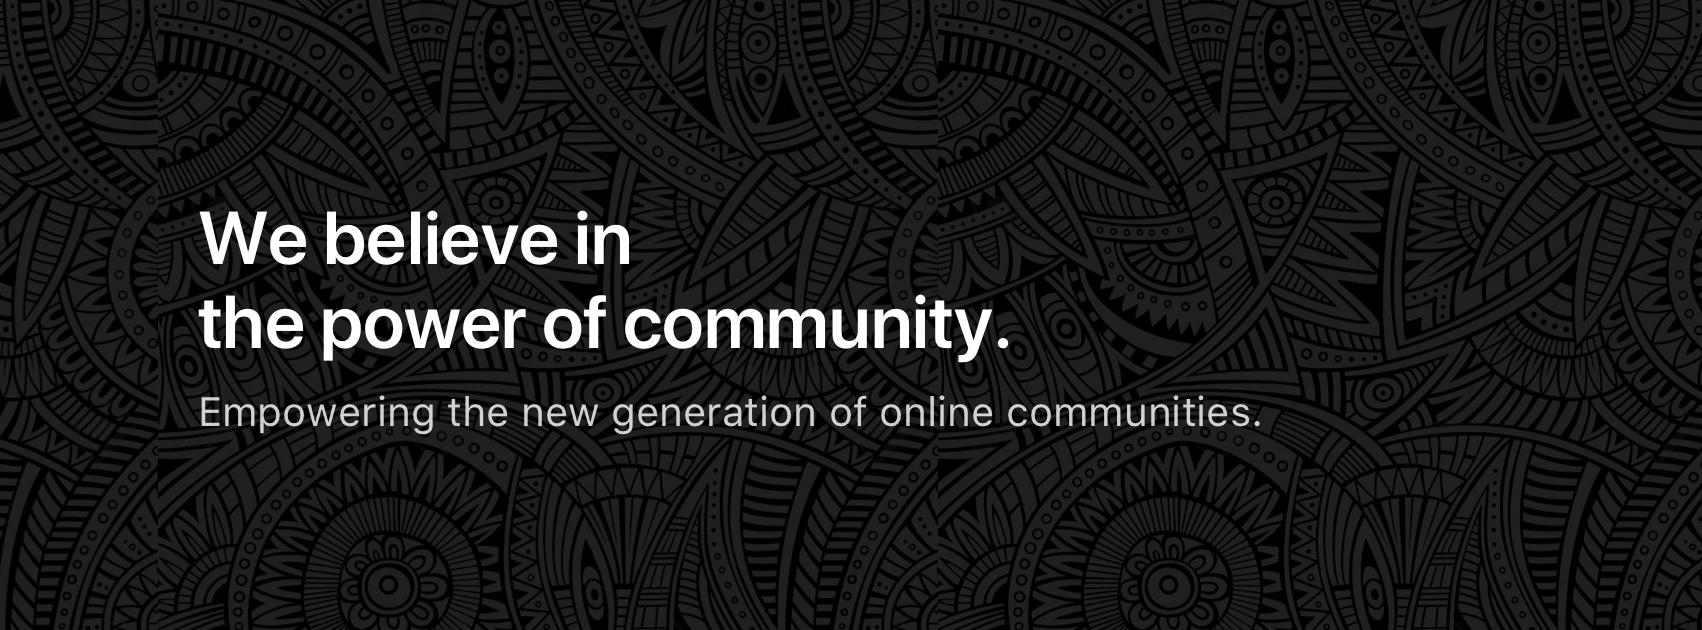 Recensioni Tribe Community Platform: Piattaforma personalizzabile per creare una community online - Appvizer